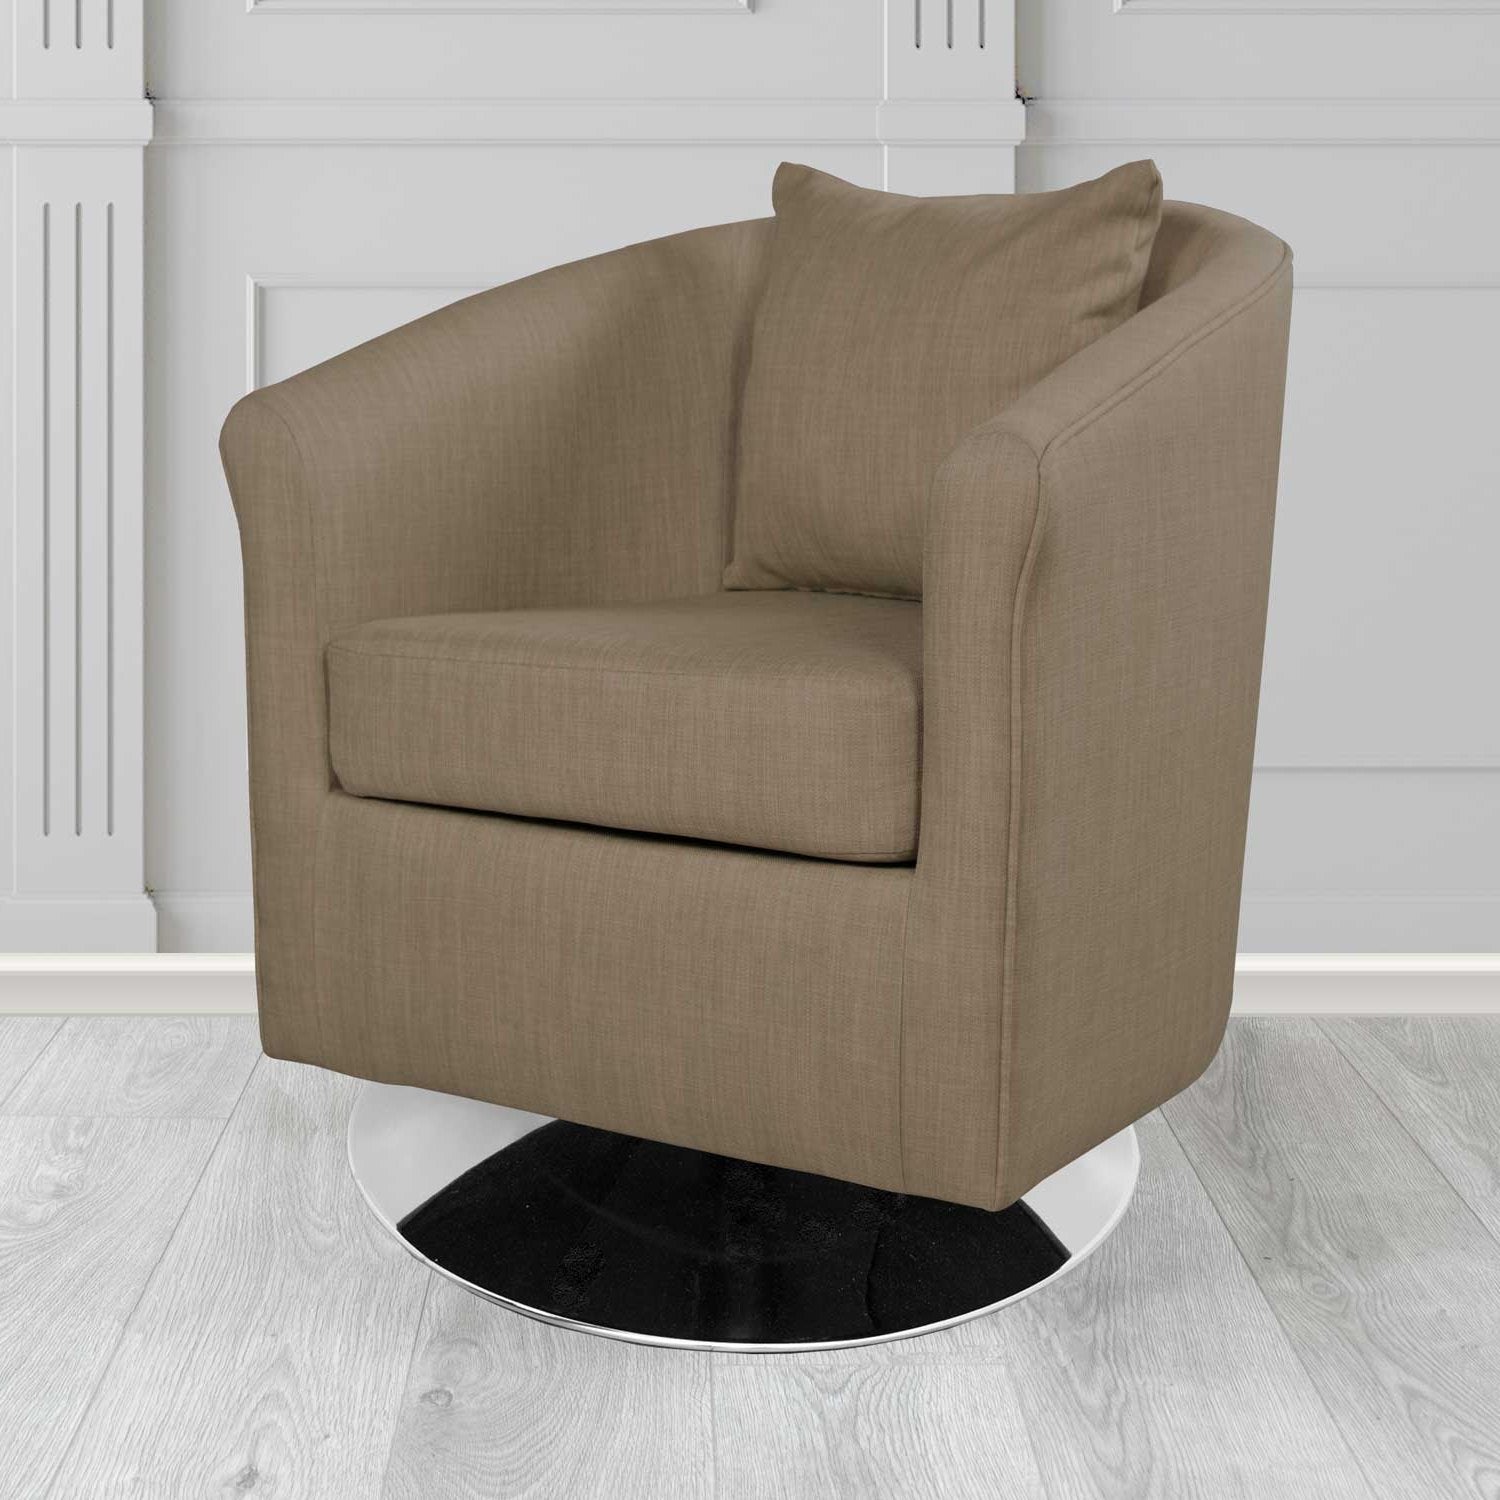 St Tropez Charles Nutmeg Plain Linen Fabric Swivel Tub Chair - The Tub Chair Shop